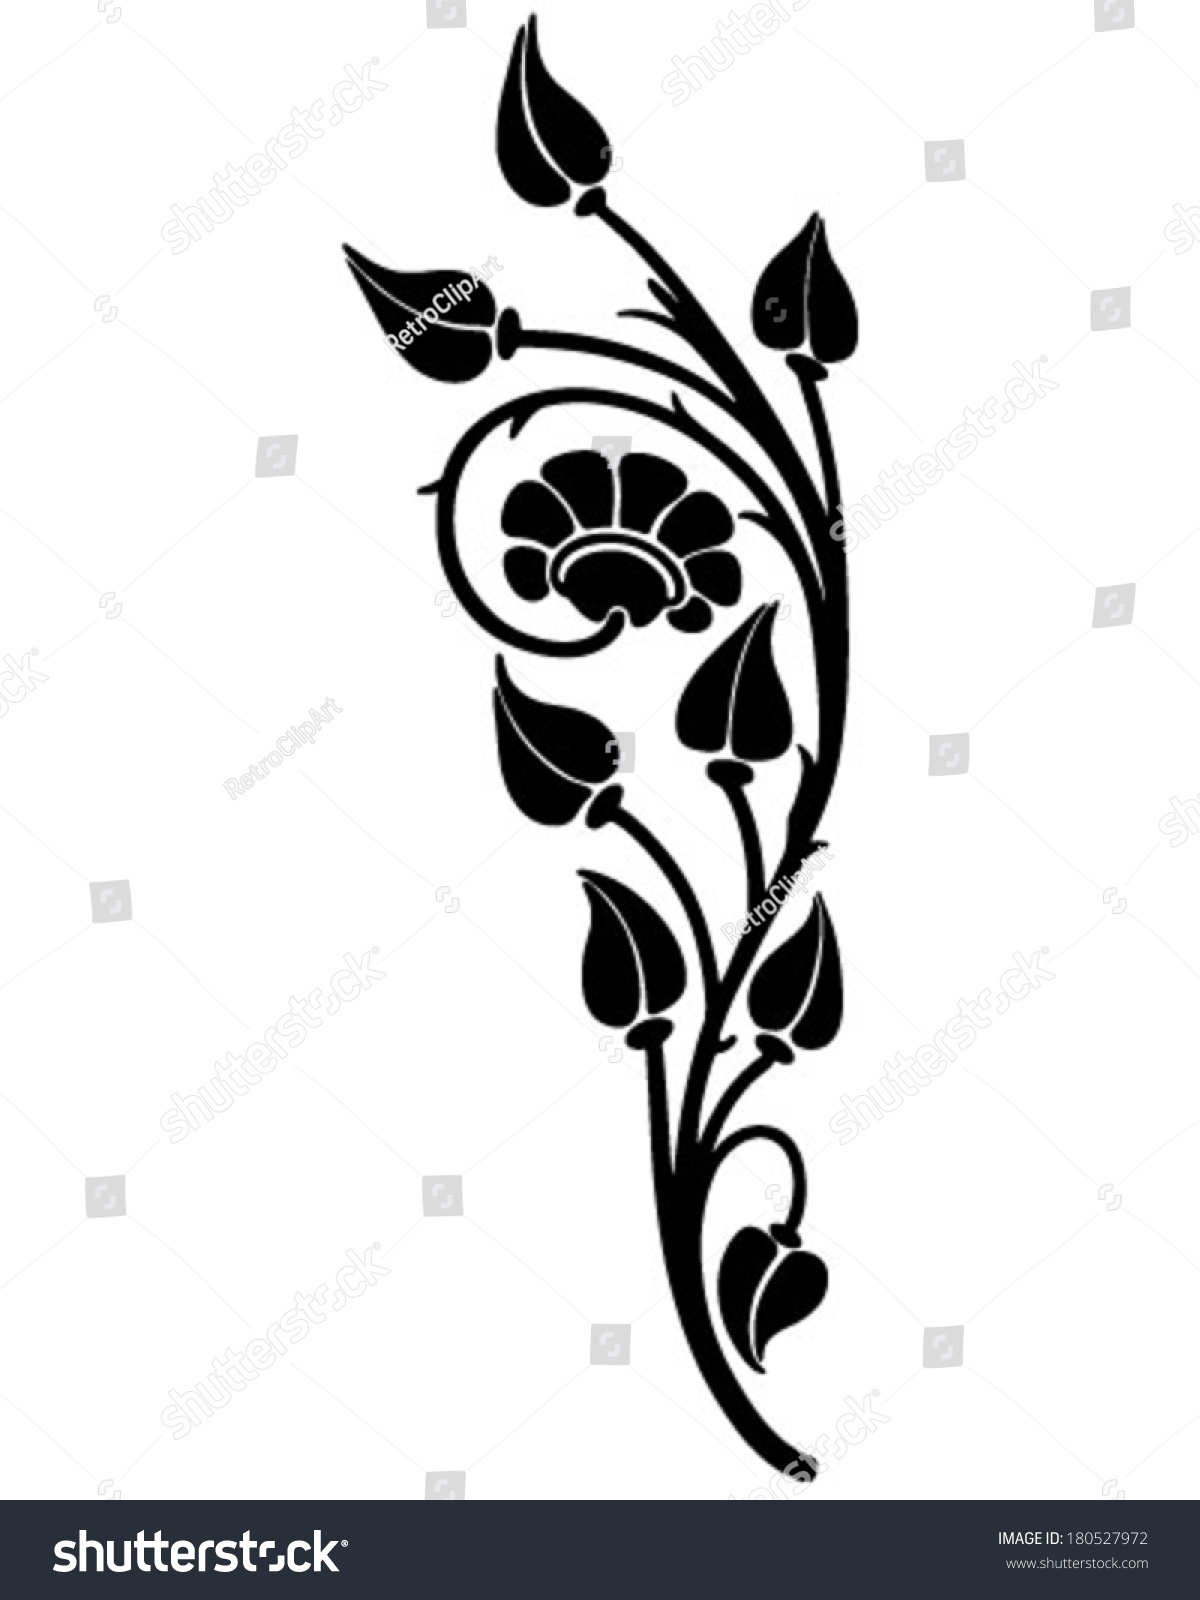 flower motif clip art - photo #29